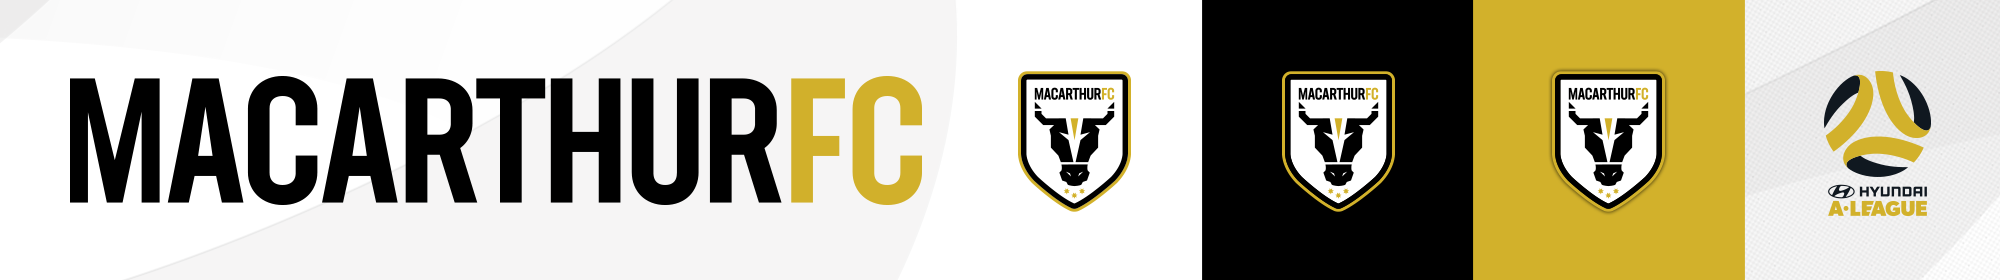 Macarthur FC Thin Banner